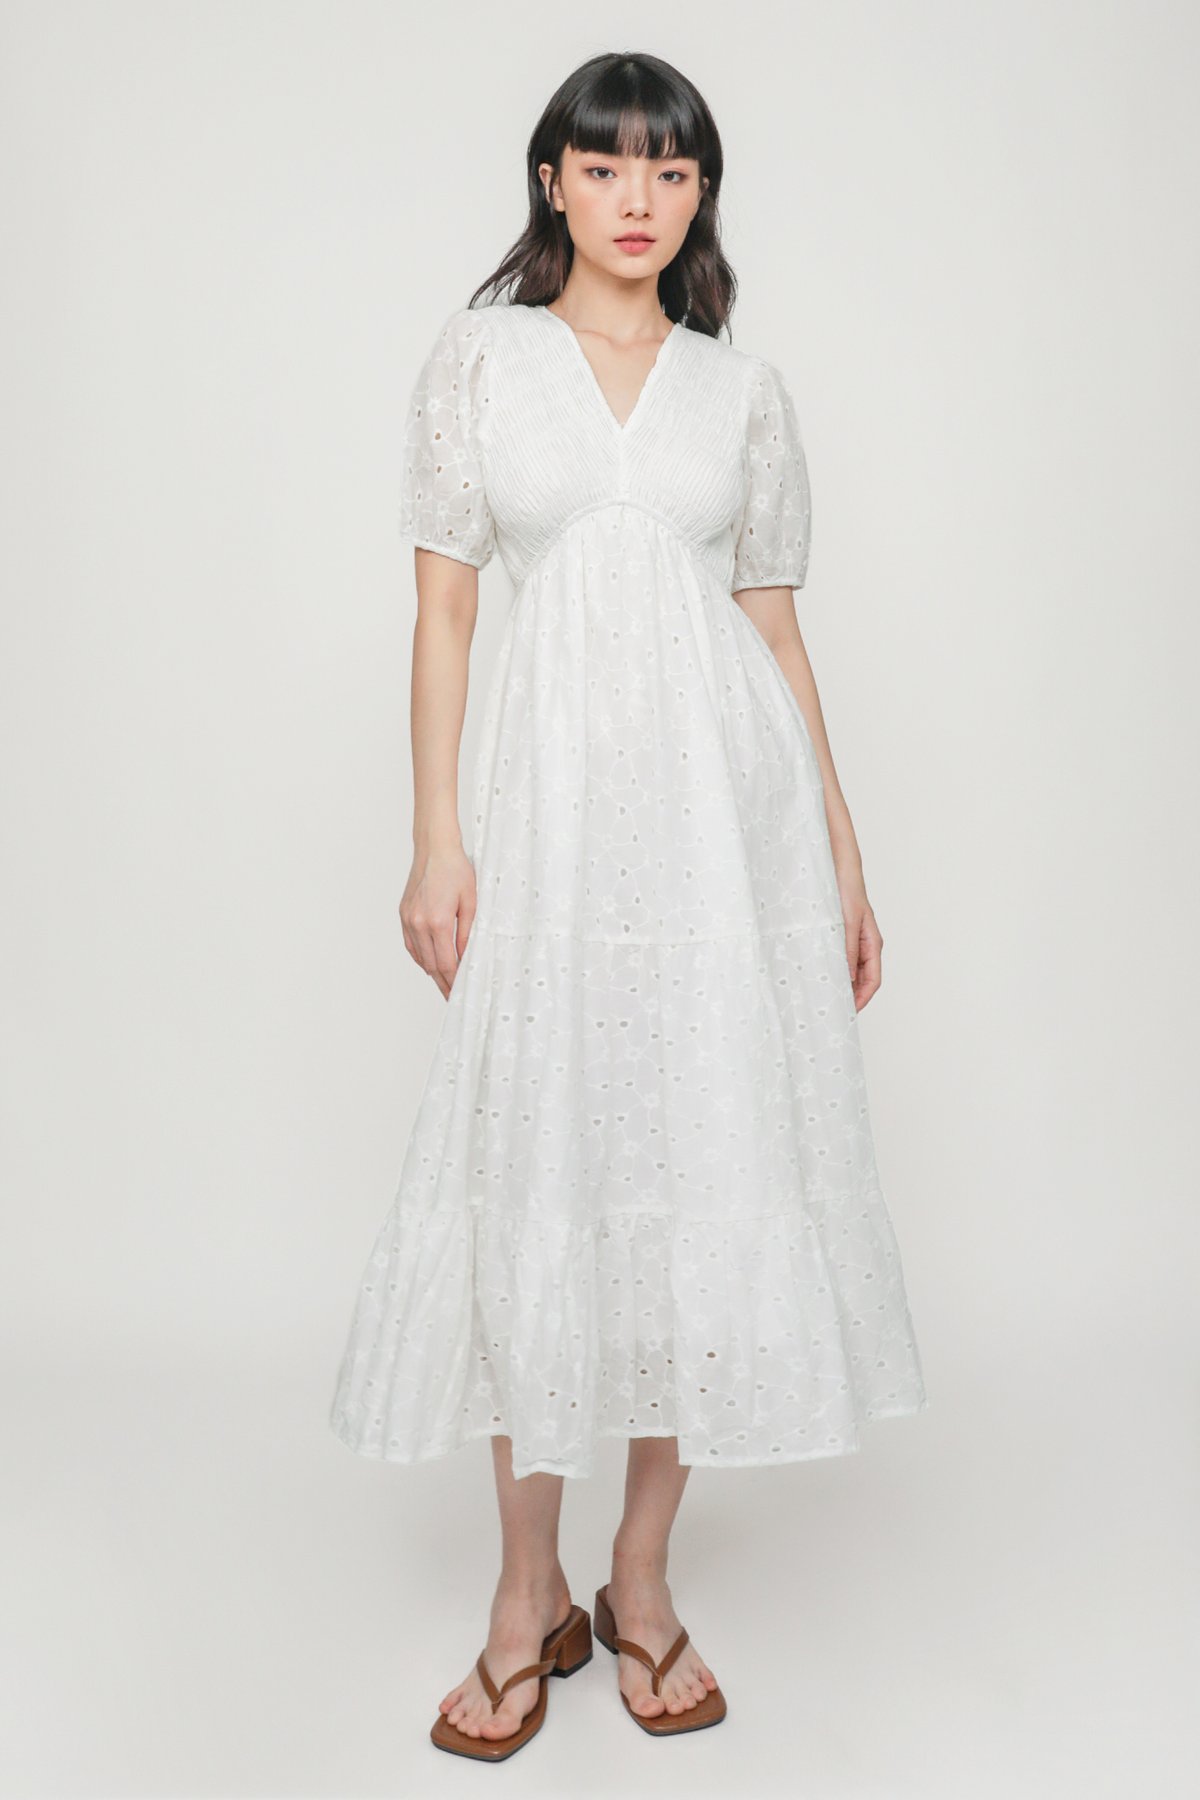 Idalia Smocked V Neck Eyelet Dress (White)